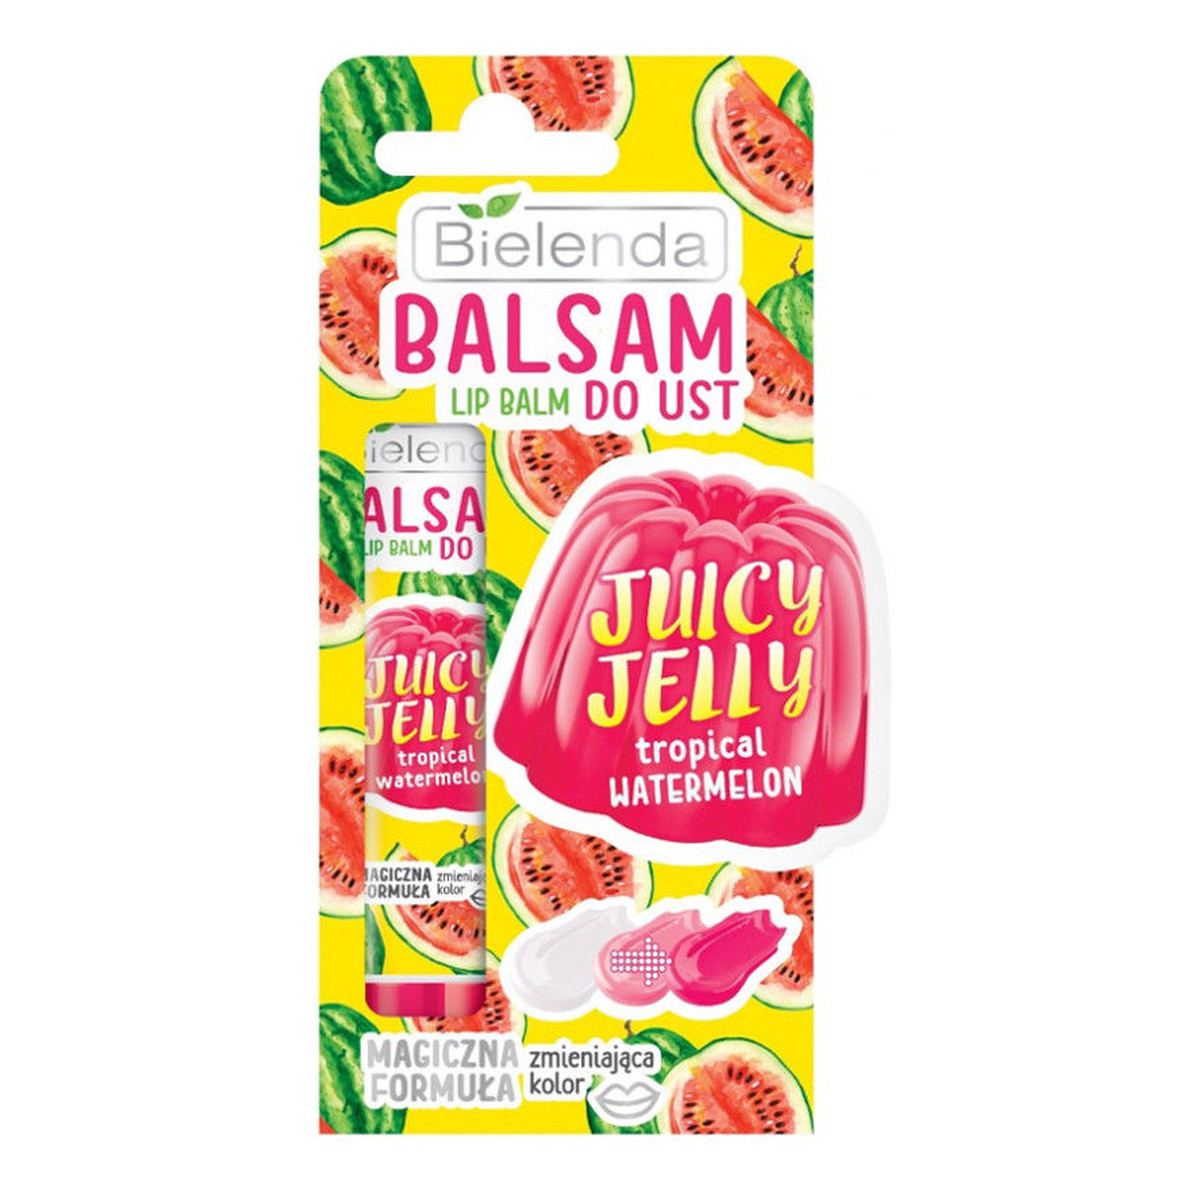 Bielenda Juicy Jelly Balsam Do Ust Zmieniający Kolor Tropical Watermelon 10g